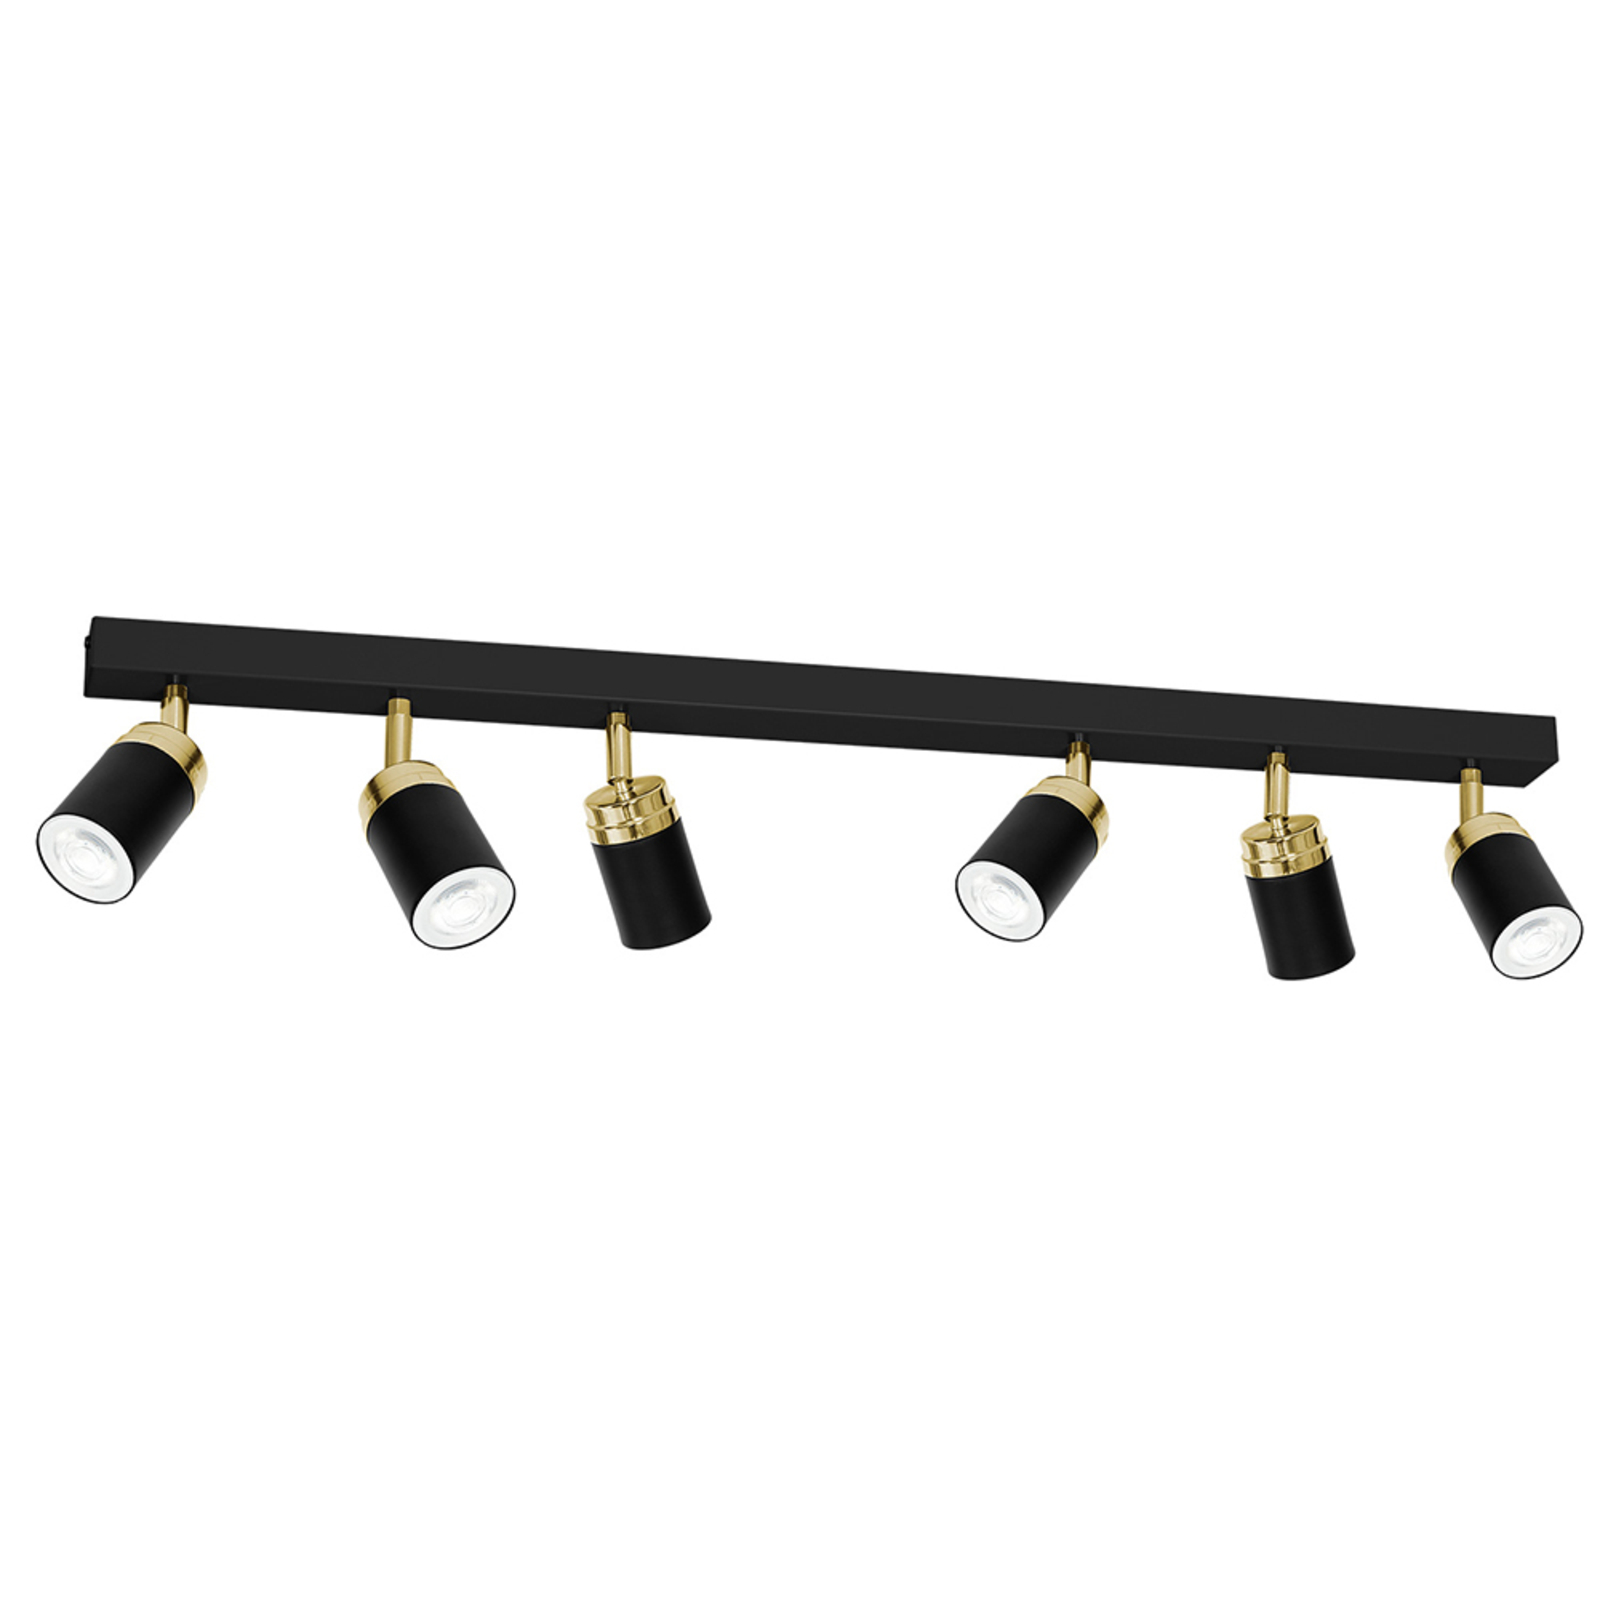 "Reno" lubinis prožektorius, šešios lemputės, juoda/auksinė